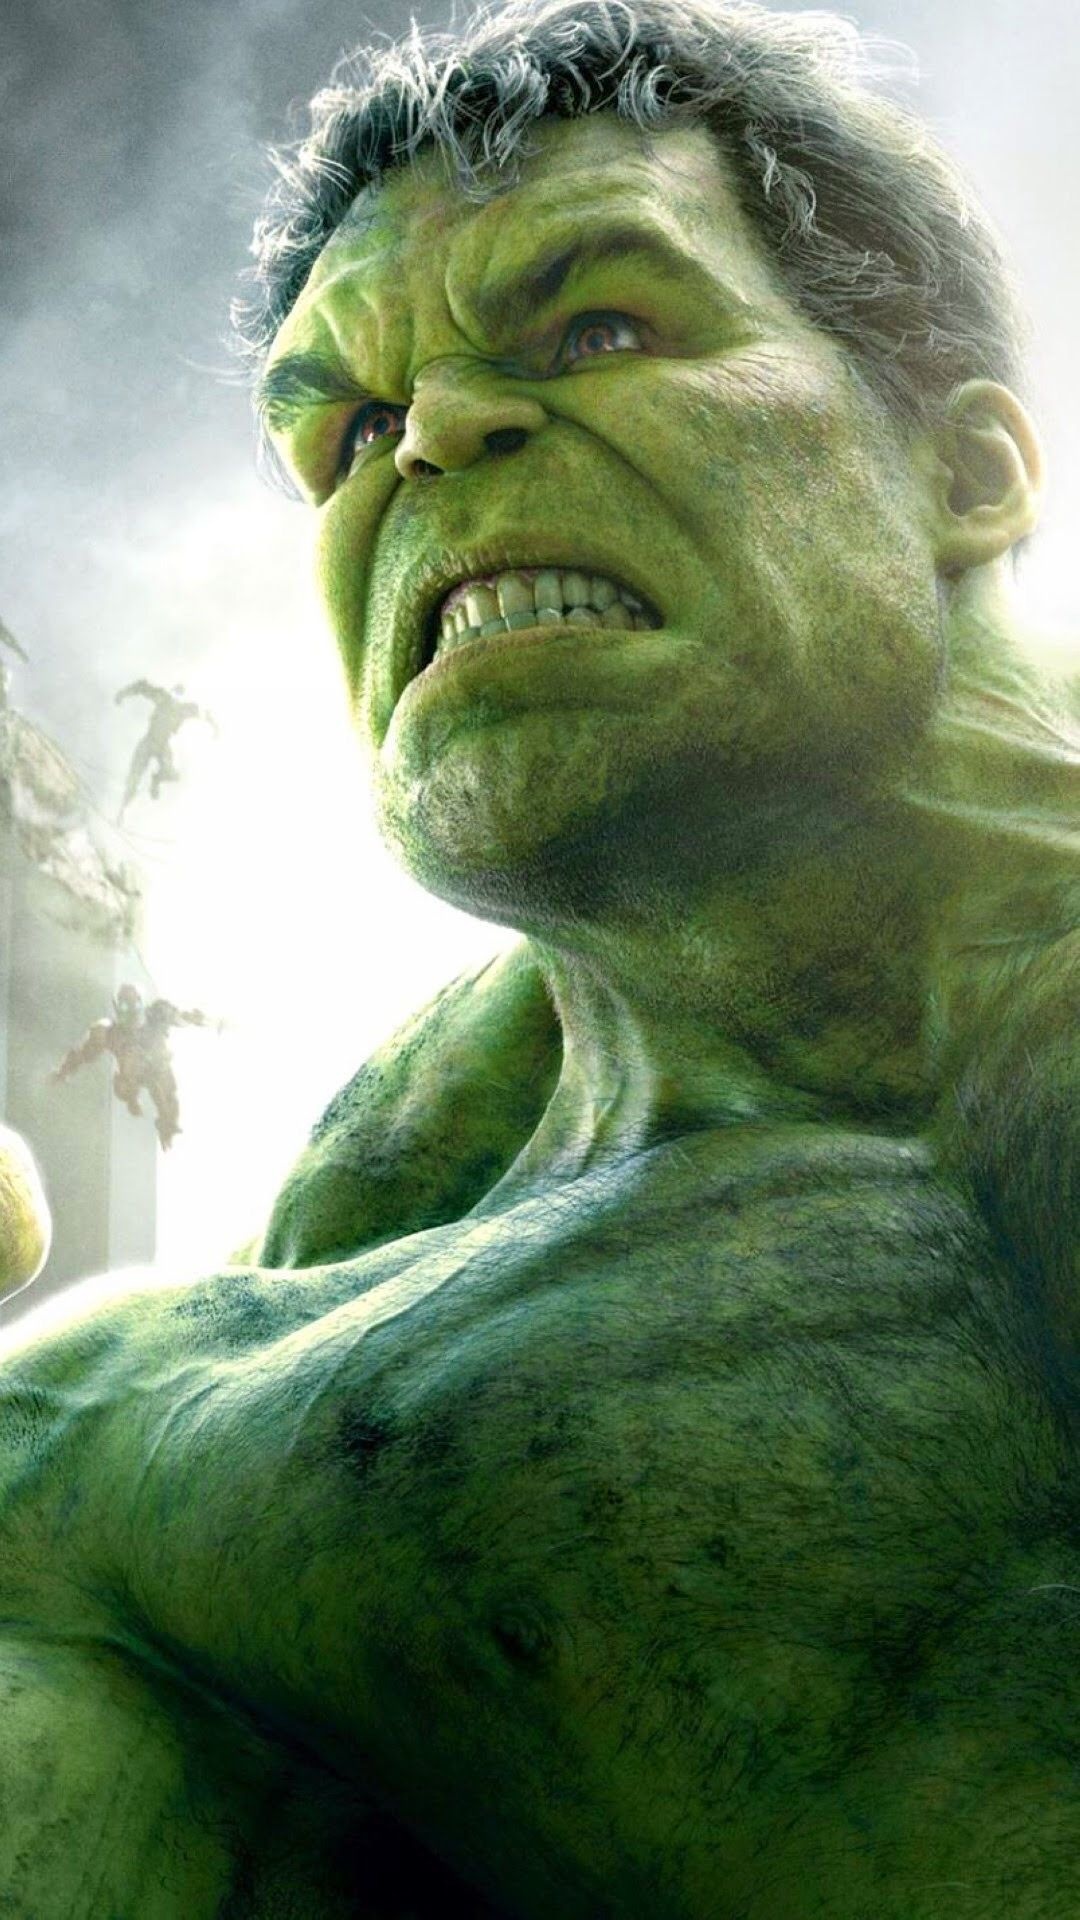 Avengers wallpaper, Hulk Avengers 4k gaming wallpaper, 1080x1920 Full HD Phone